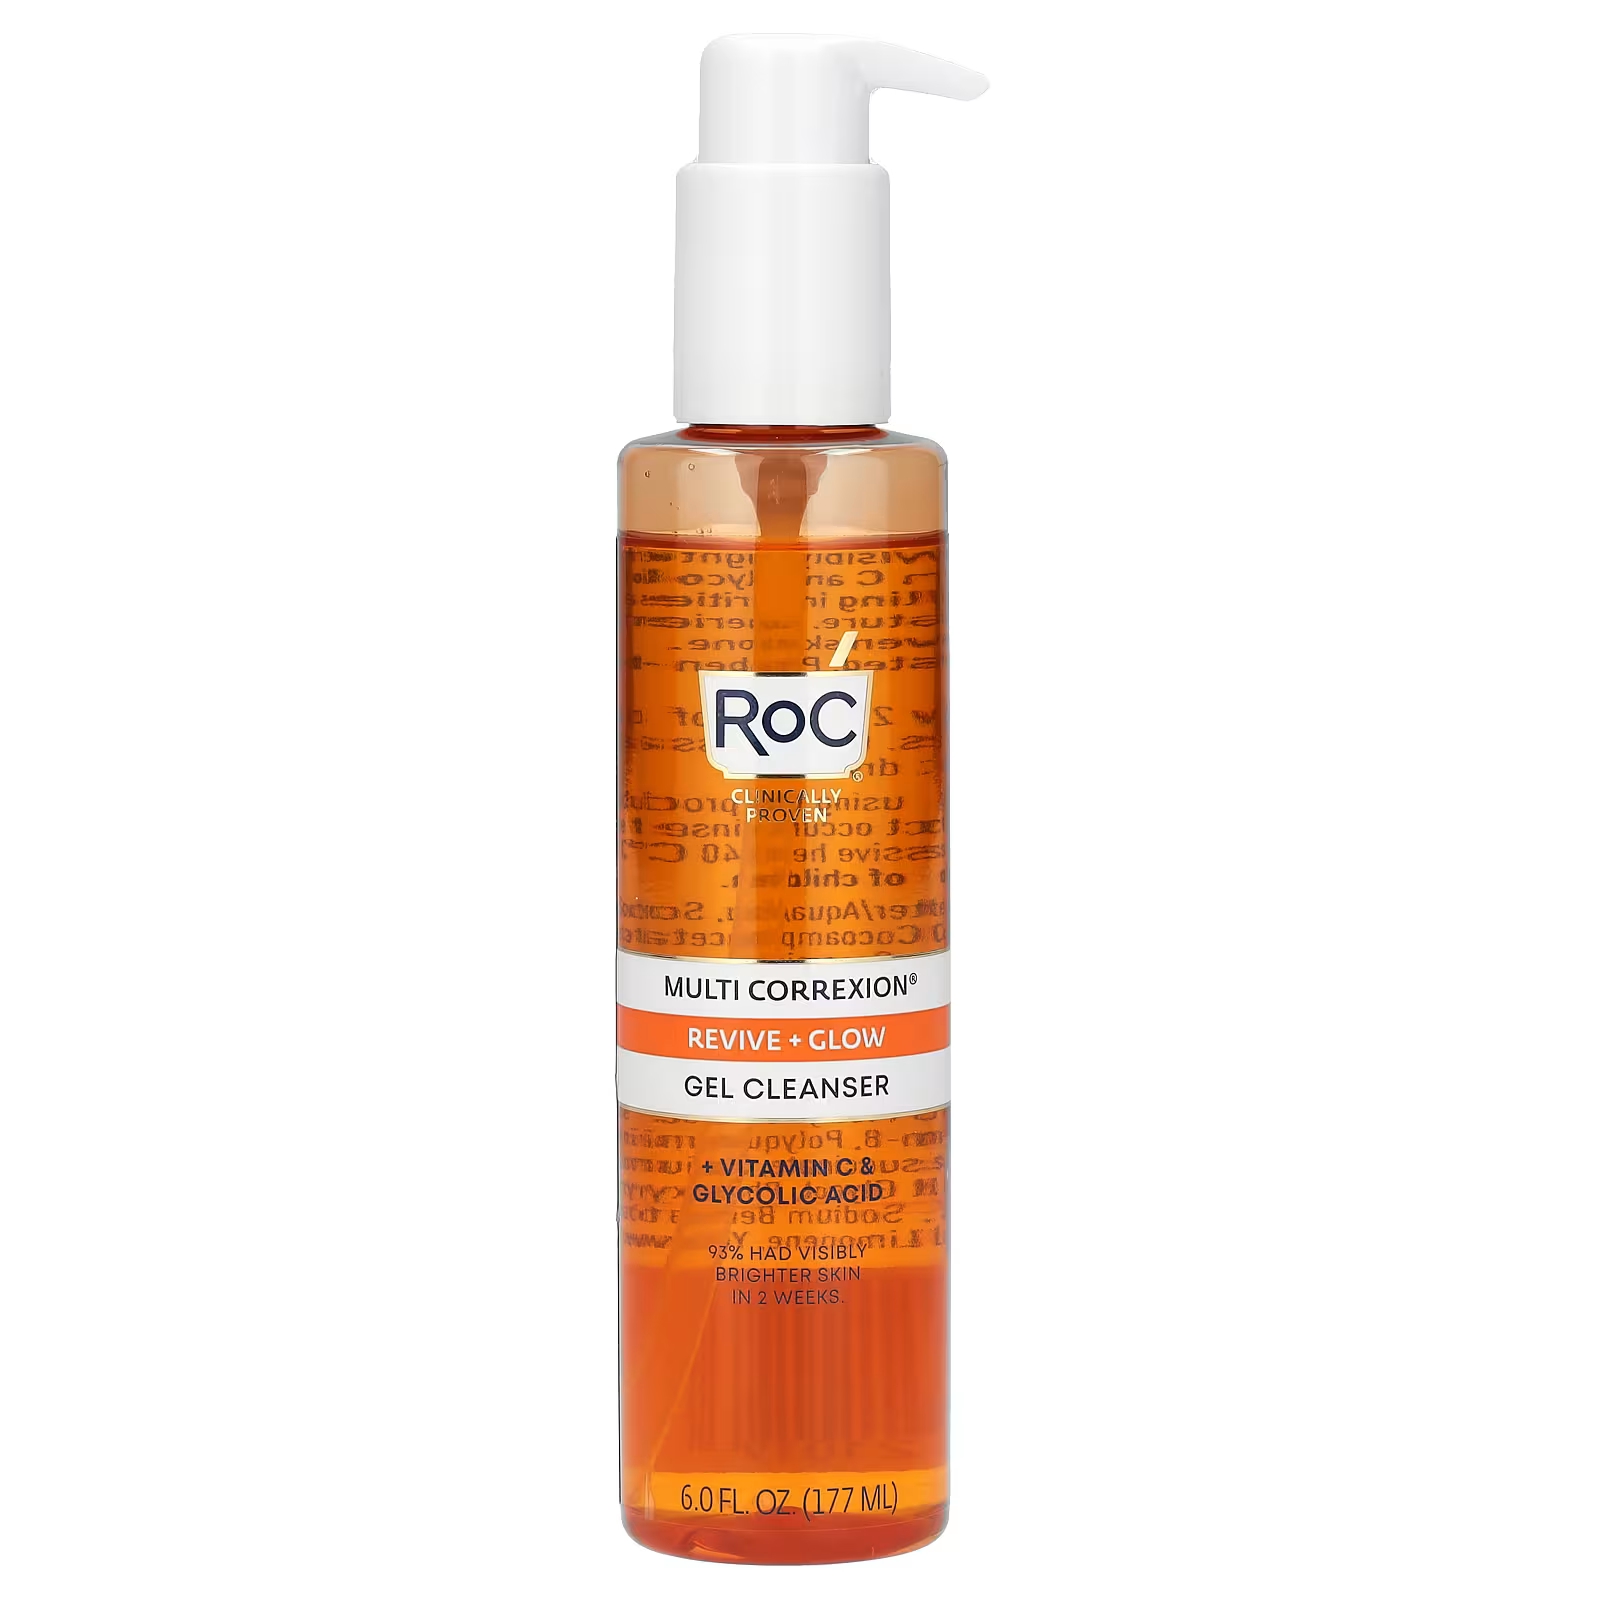 RoC Multi Correxion Revive + очищающий гель для сияния + витамин С и гликолевая кислота, 6 жидких унций (177 мл)